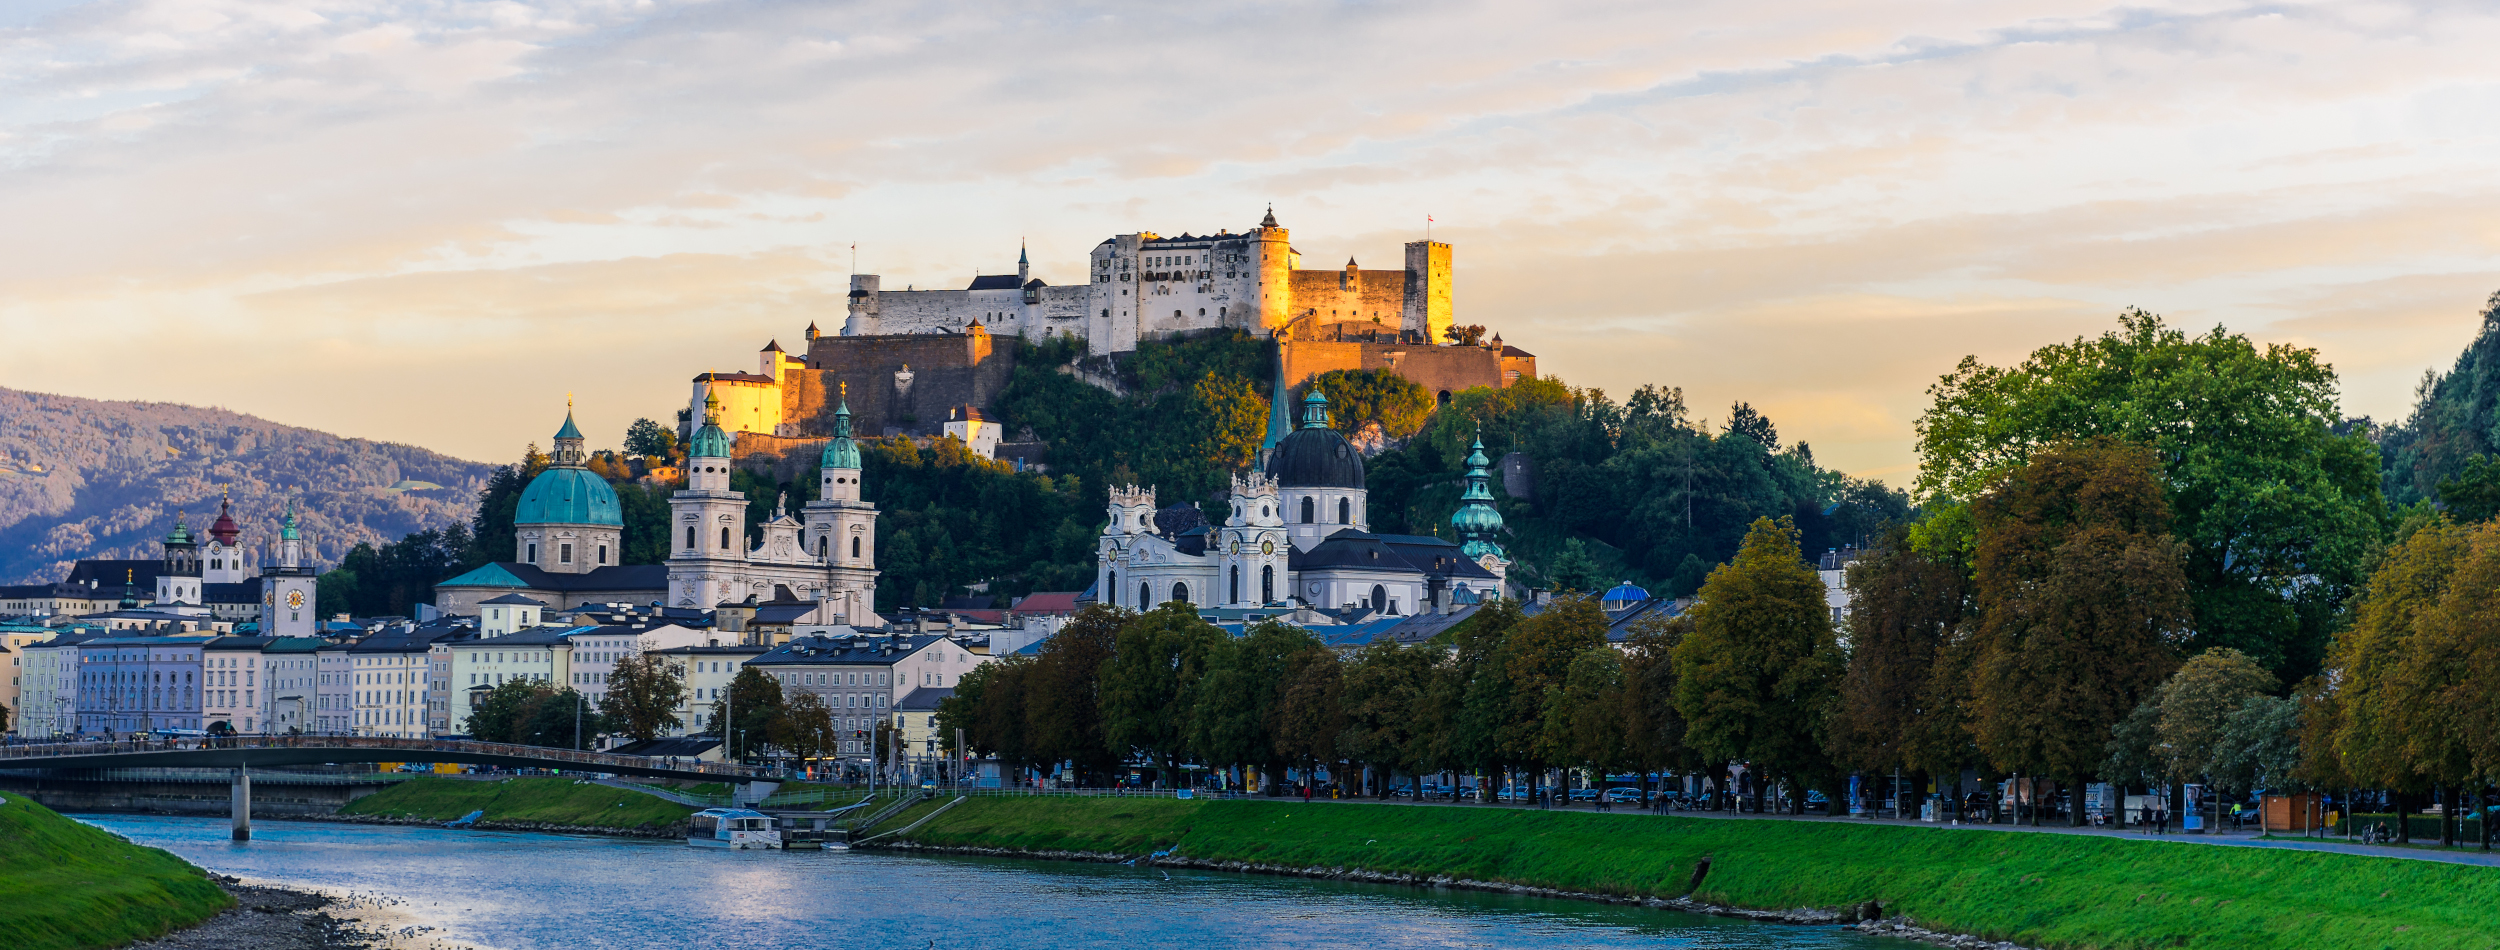 Salzburg erleben Mozart und mehr Blog Bahnhit